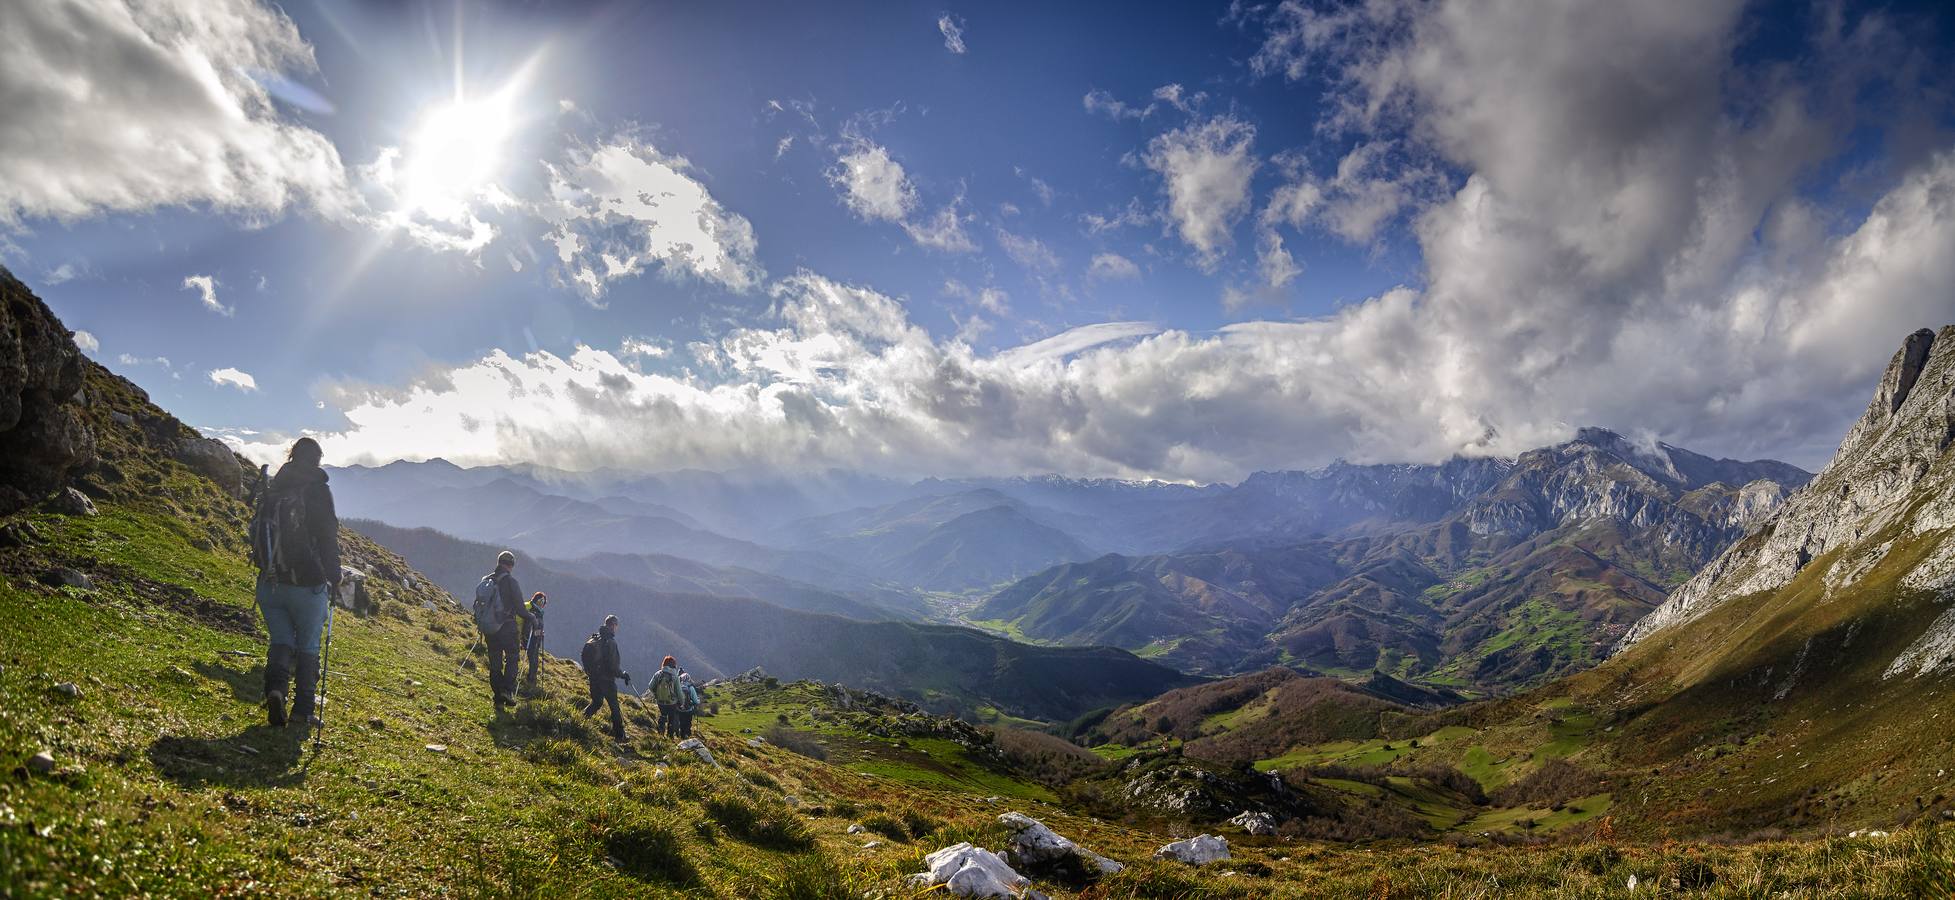 Naturea propone una gran variedad de actividades en las áreas protegidas de Cantabria, con propuestas para todo tipo de públicos y que se adaptan a cada época del año.